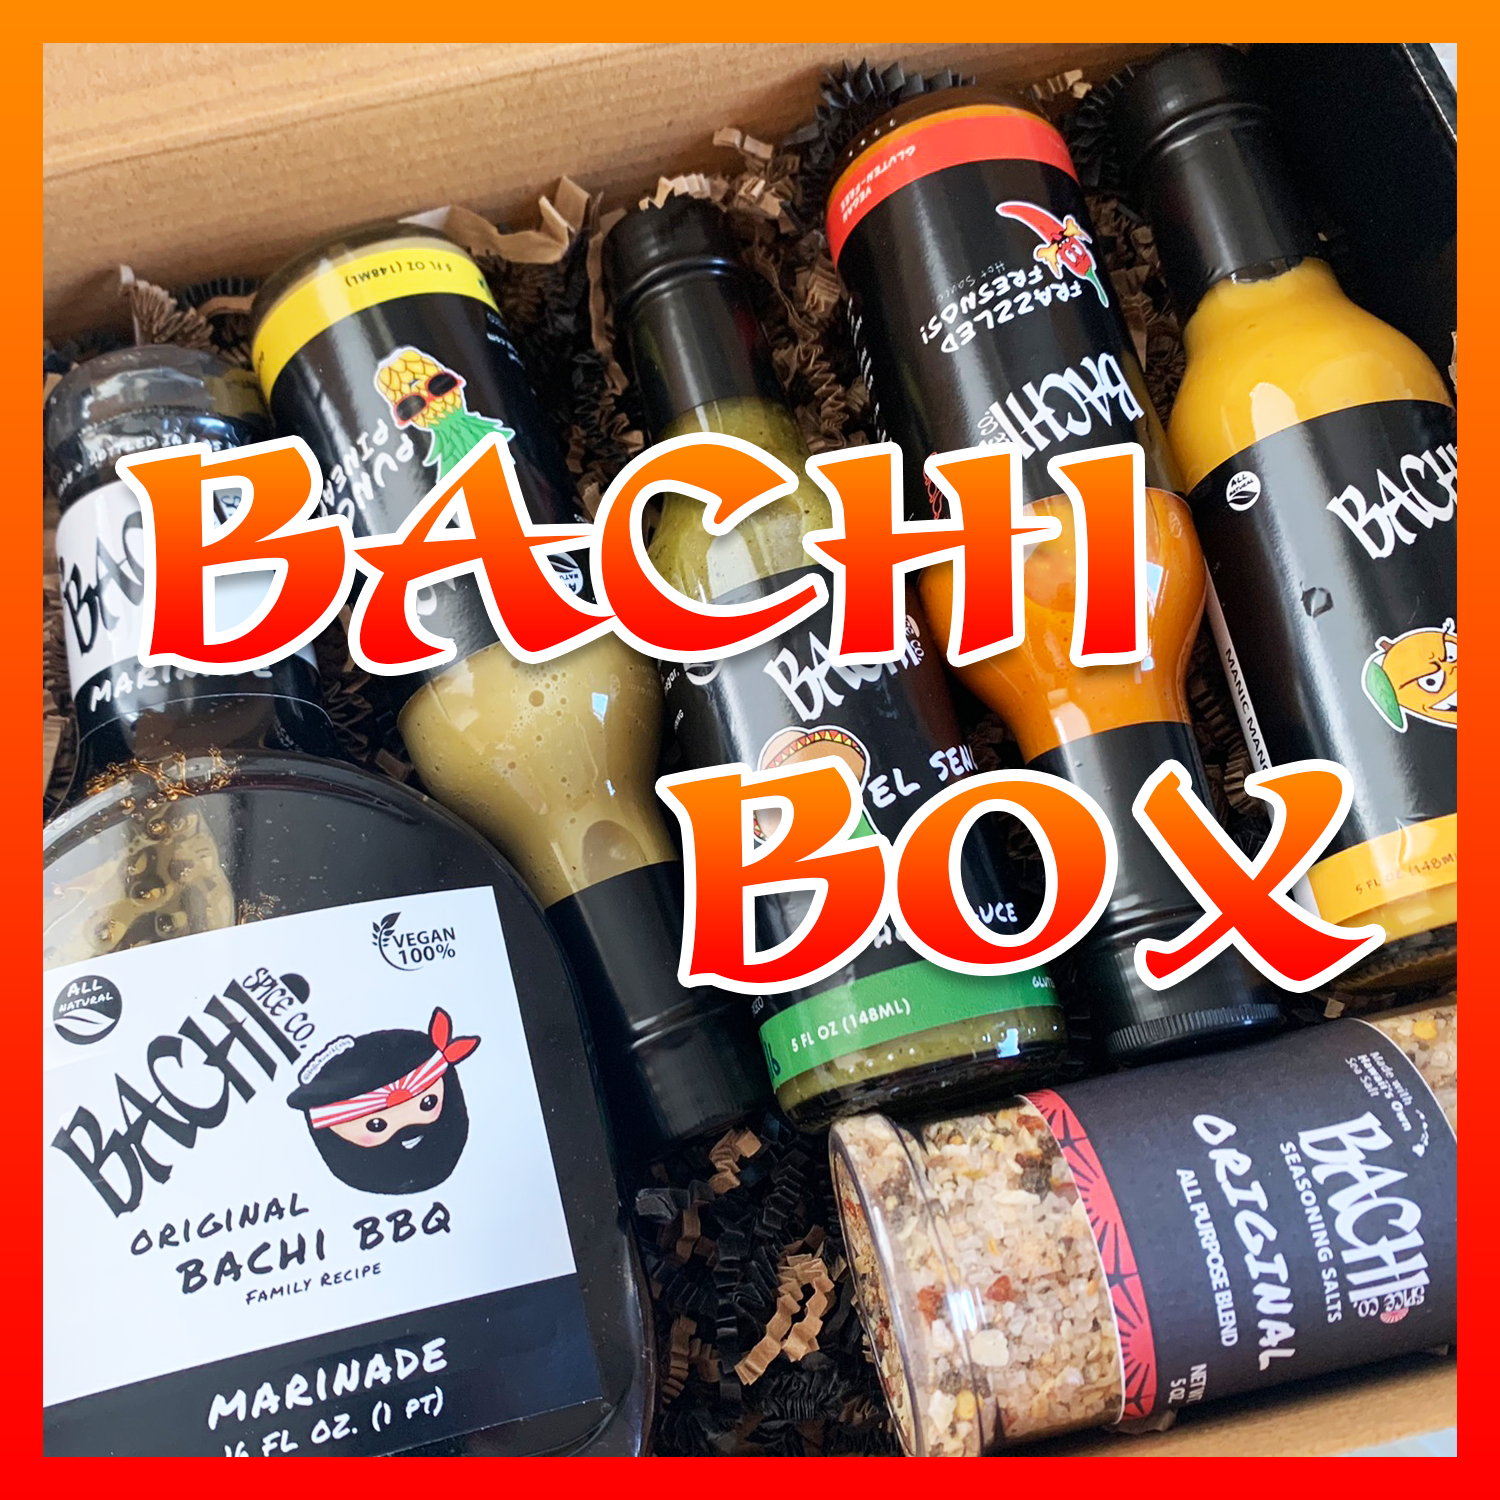 Bachi Box